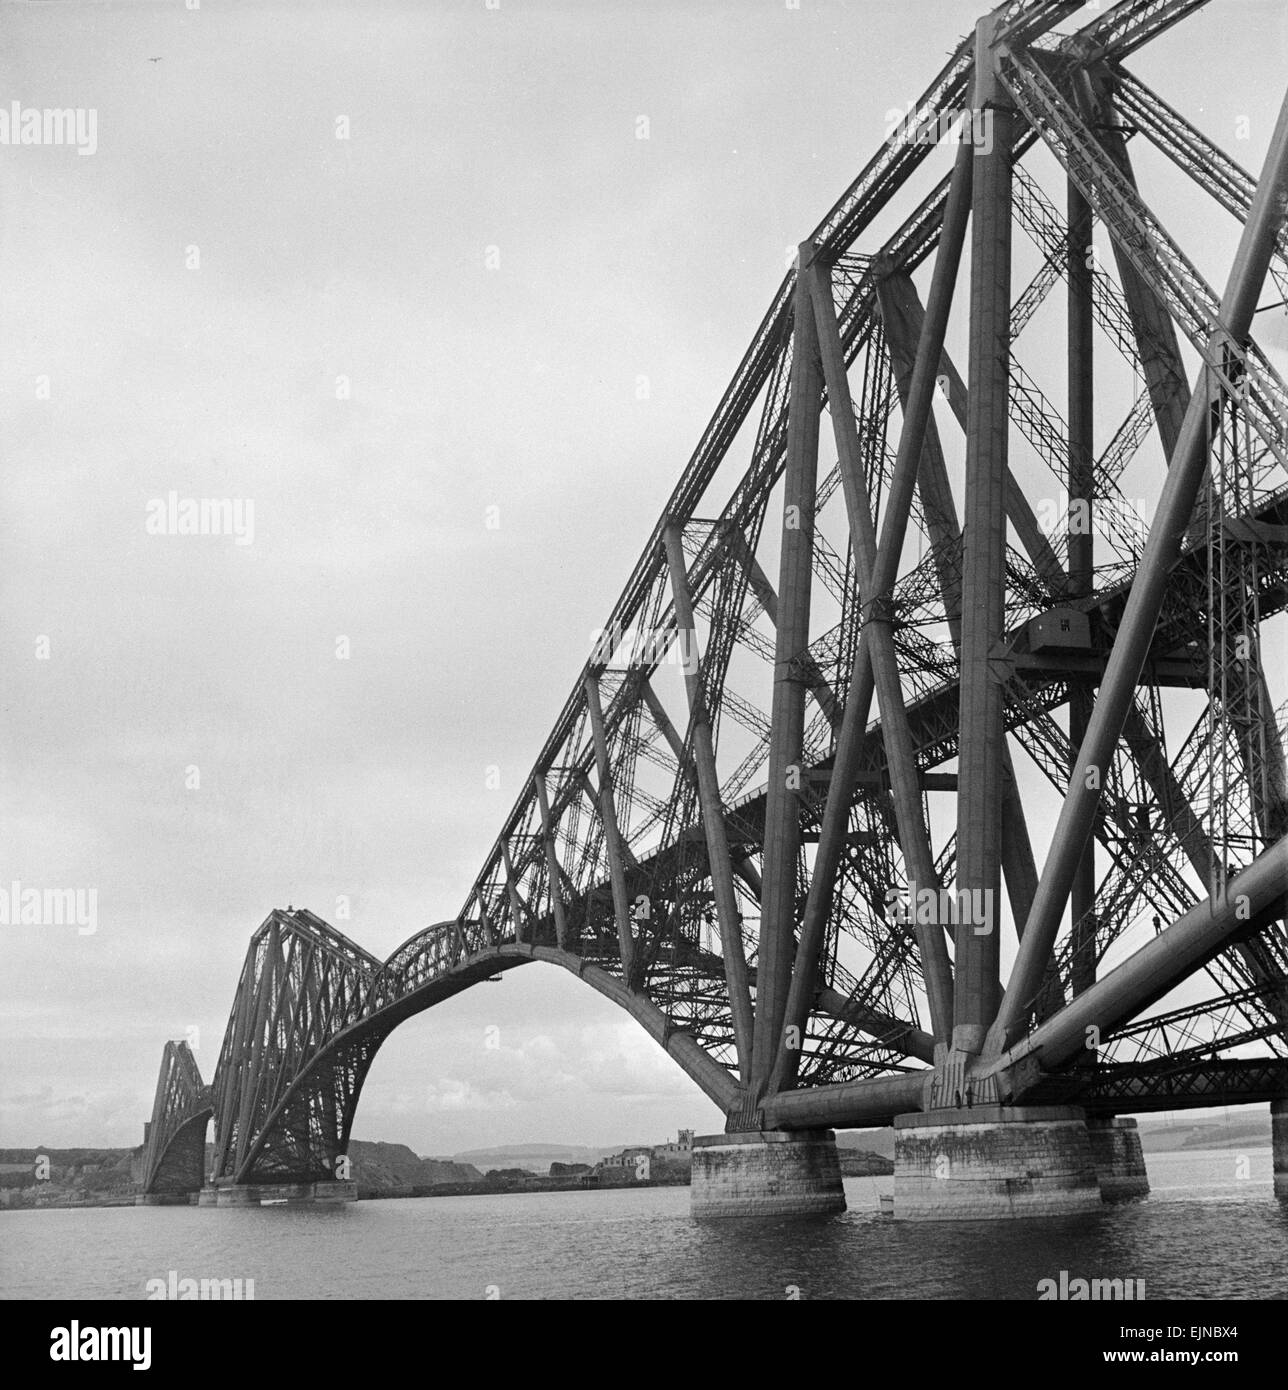 Le Forth Rail Bridge. Le Pont du Forth (construit en 1890) a été le plus grand pont à portée libre au monde. Le pont a pris sept ans pour construire, coût 3 millions de livres à l'époque et utilisé plus de 50 000 tonnes d'acier. C'était la plus grande structure de génie civil réalisés au cours de la dix-neuvième siècle et, bien que William Morris a décrit comme 'le supremest exemplaire de toutes les laideurs', il reste une des merveilles du monde industriel. Les structures d'ingénierie Cantiliver pont Tablier AfairScenes 4 mars 1890 Anniversaire - Prince de Galles ouvre le pied 1 710 Pont du Forth en Écosse Banque D'Images